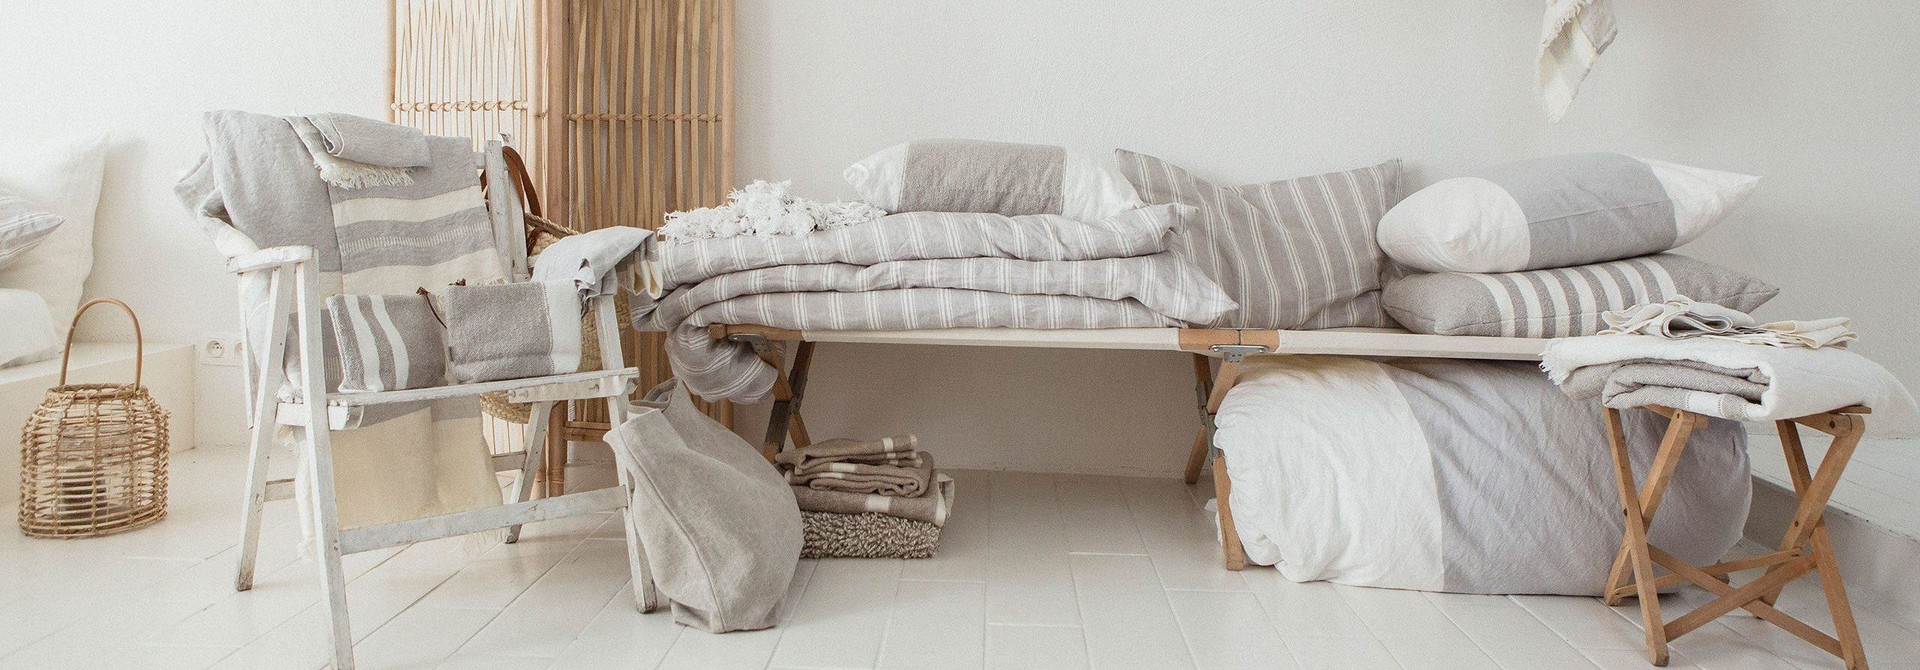 Bedding + Towels